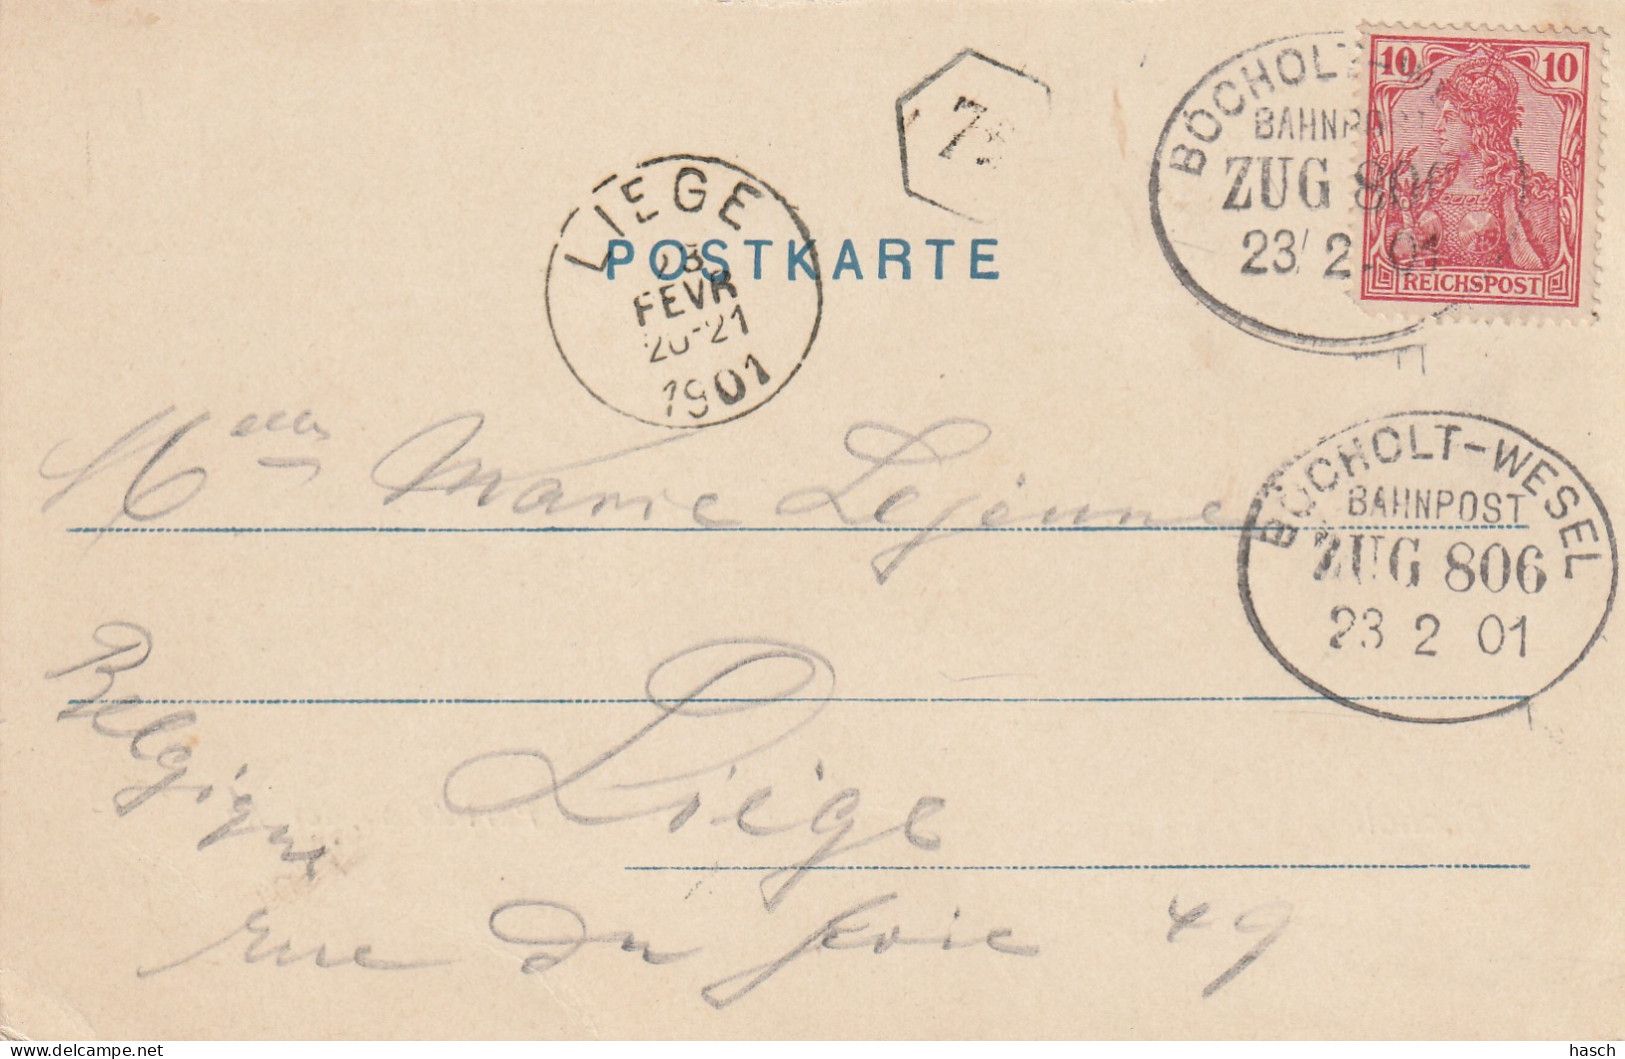 4901 20 Bocholt, Parthie An Der Aa. 1901.   - Bocholt